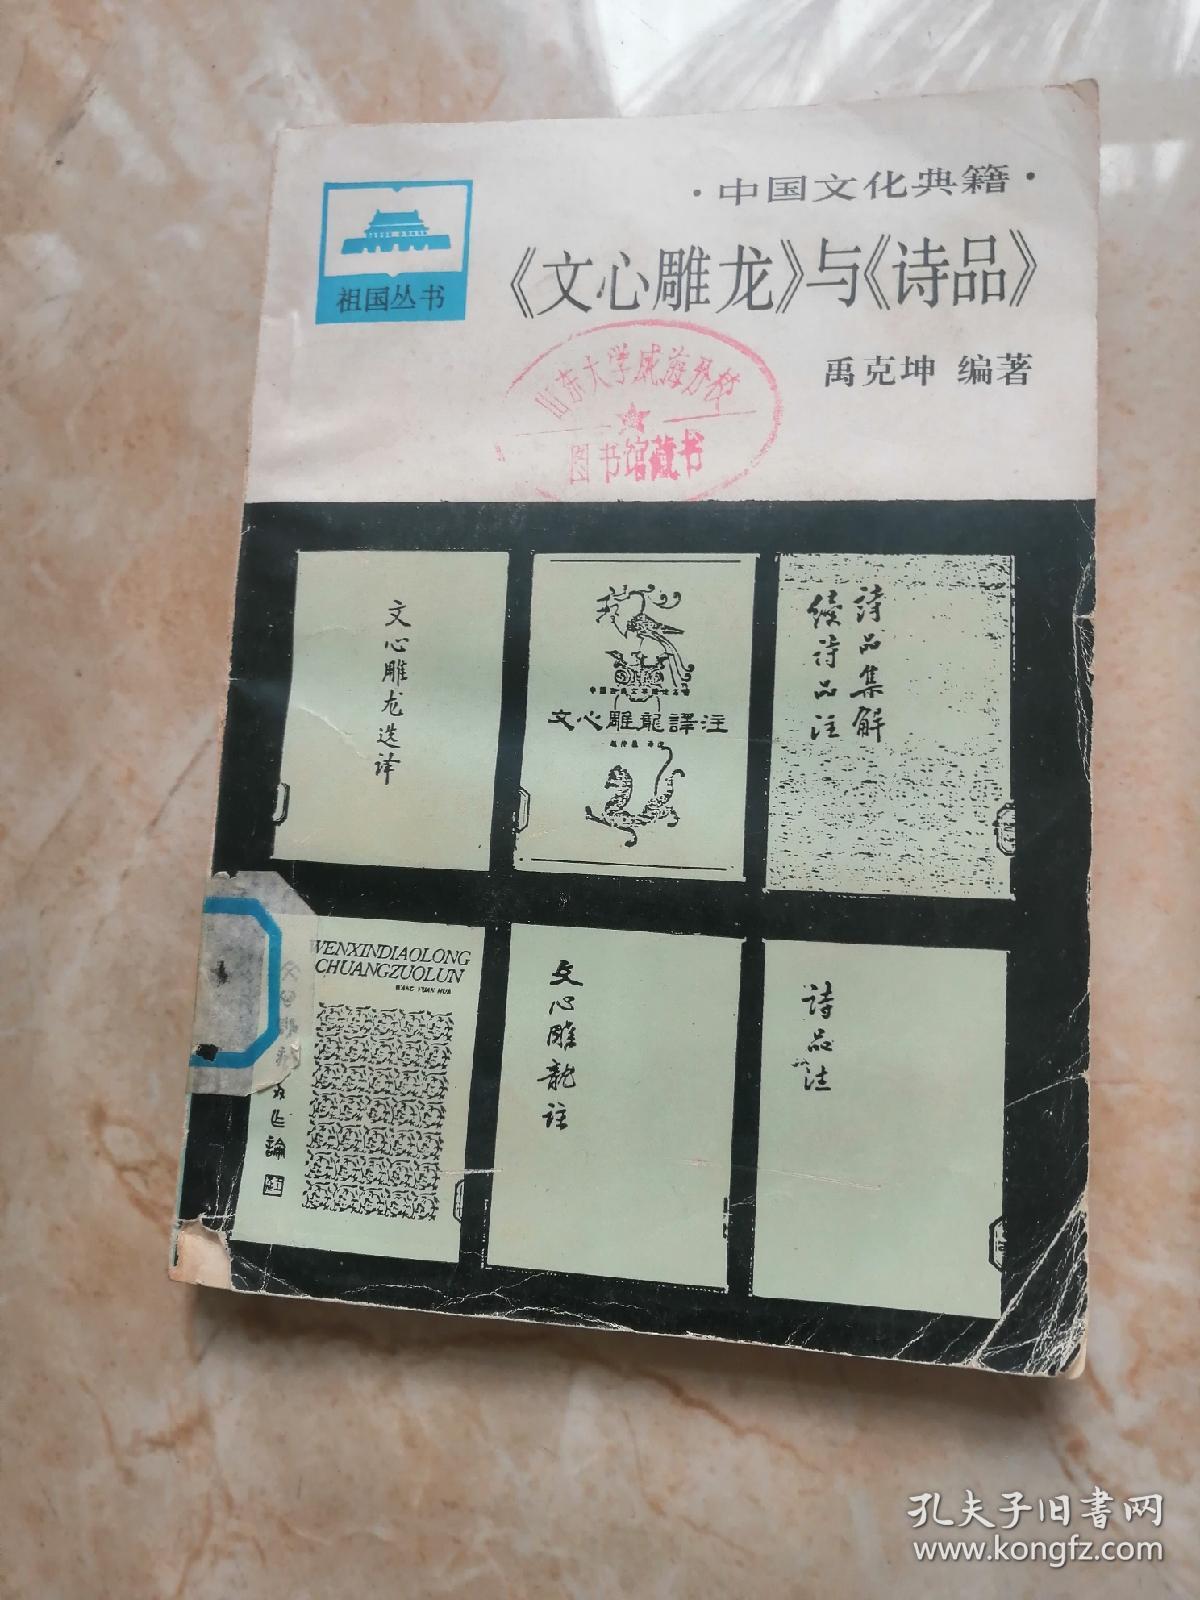 中国文化典籍:文心雕龙与诗品